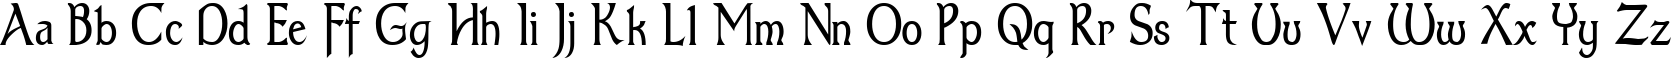 Пример написания английского алфавита шрифтом Dumbledor 3 Thin